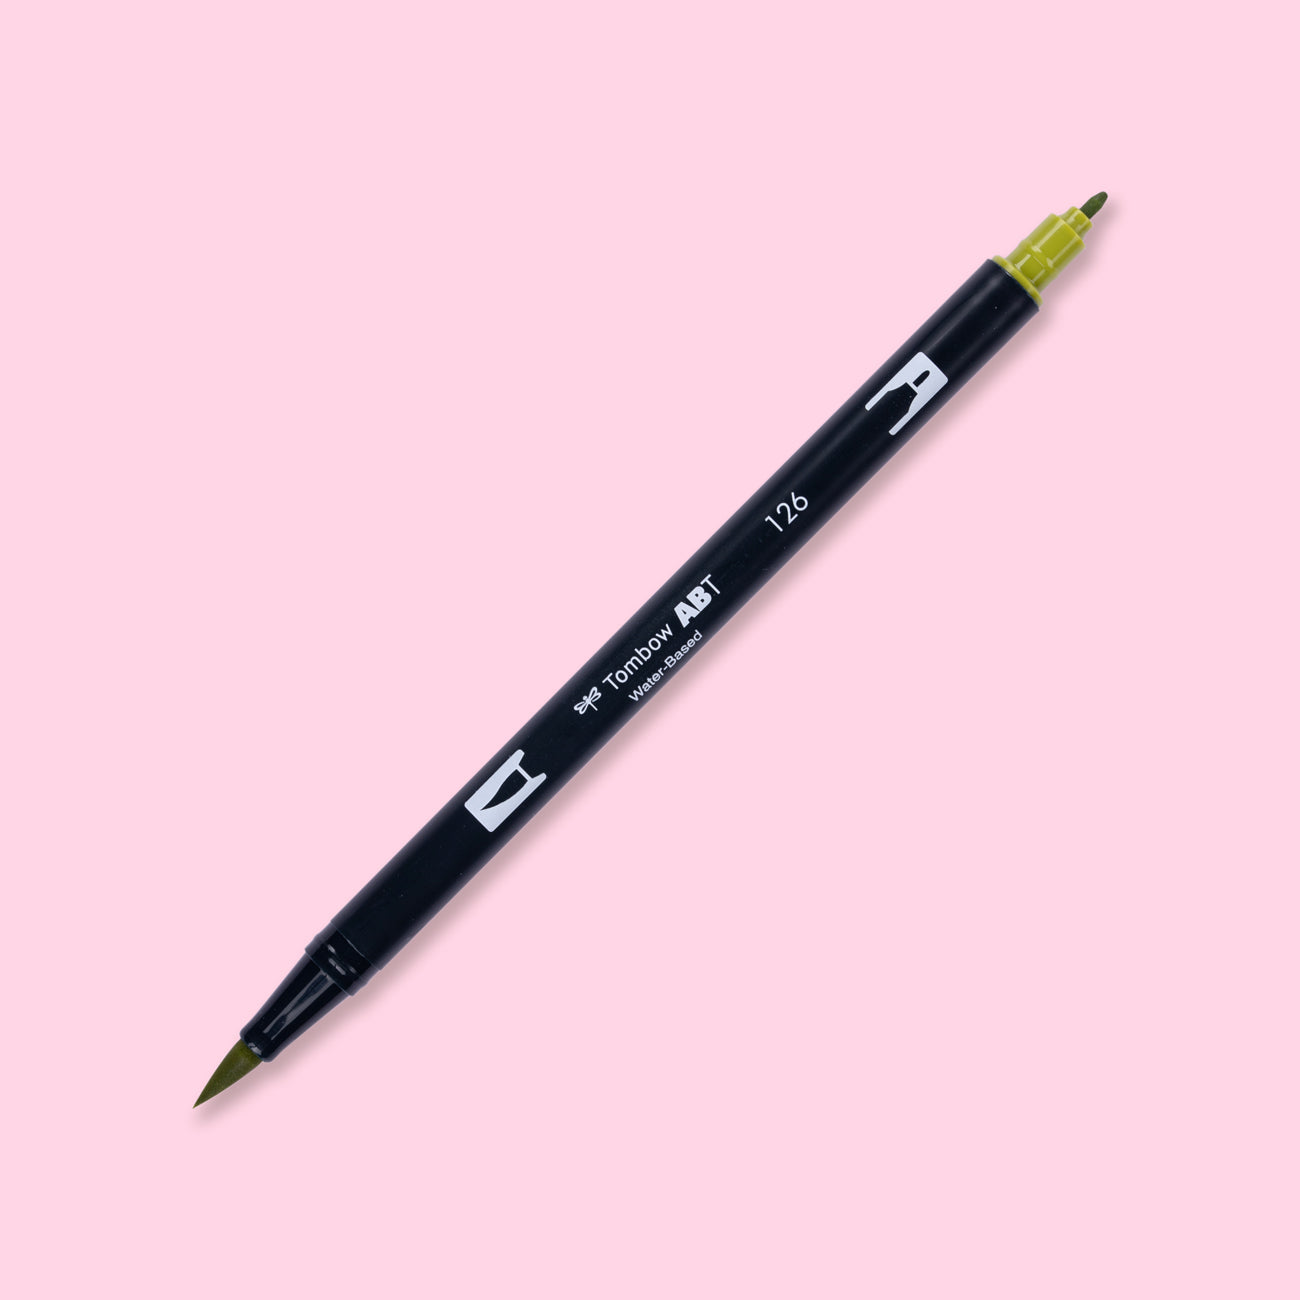 Tombow Abt 126 Dual Brush Pen - Light Olive